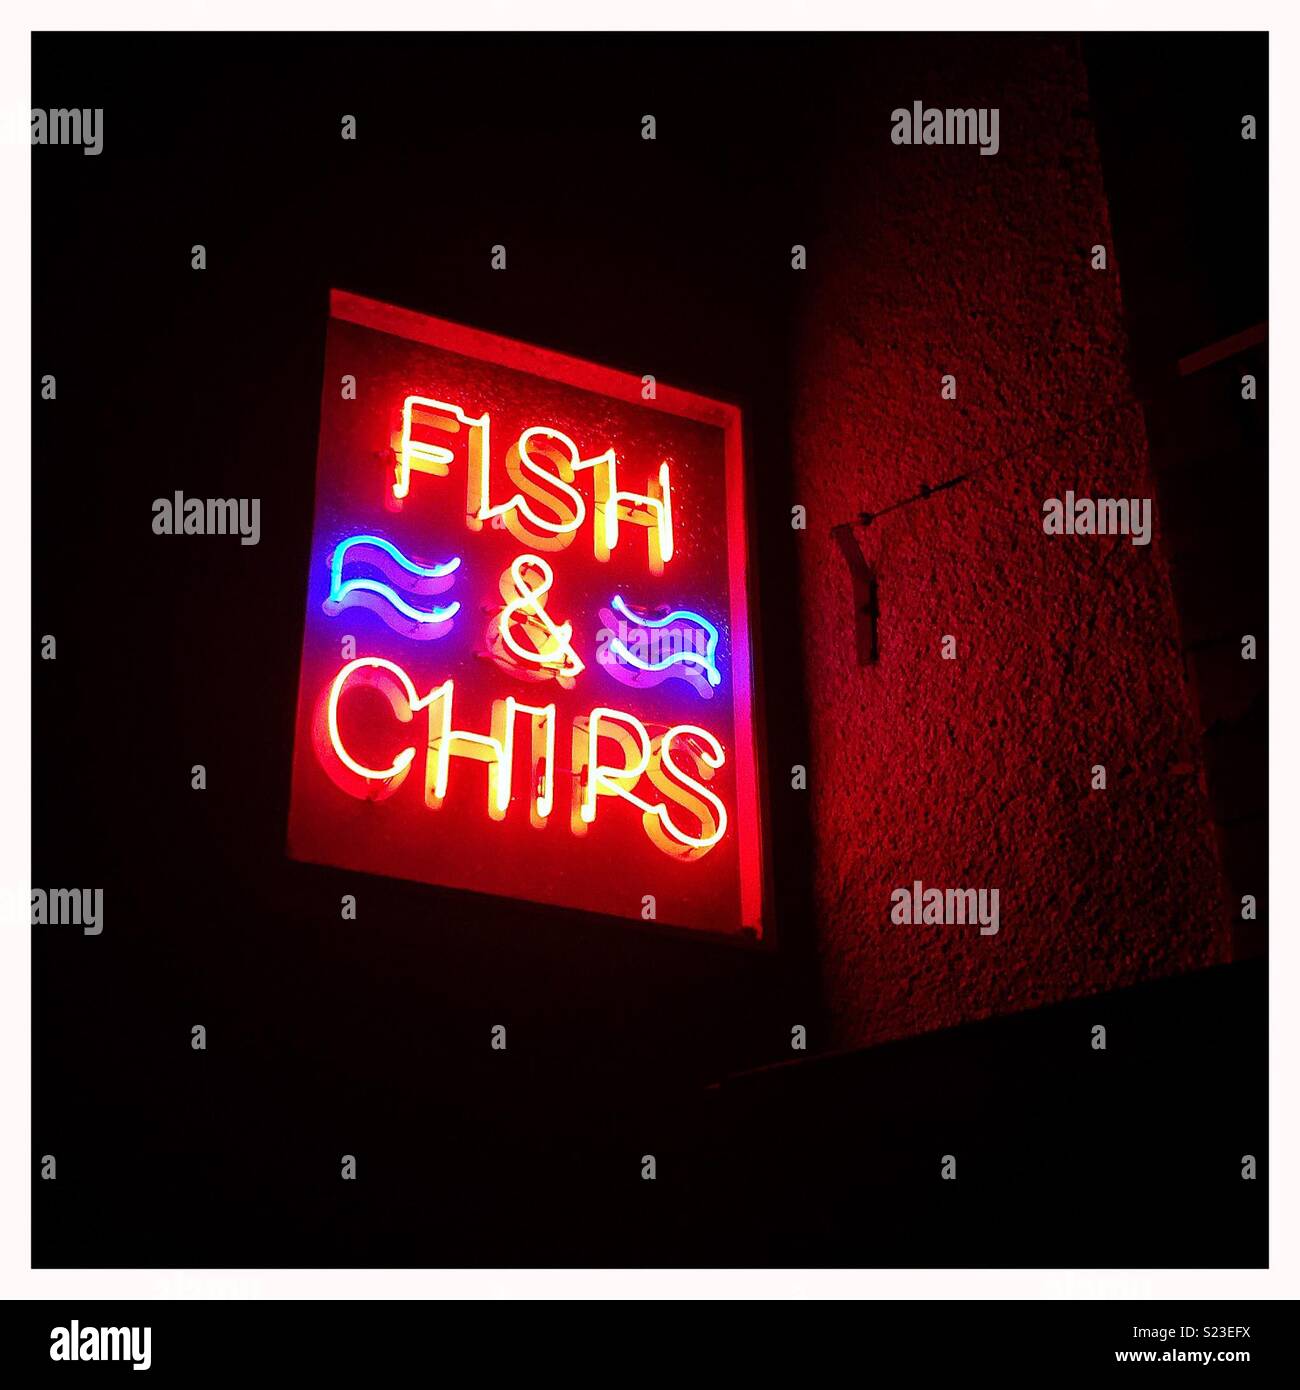 Neon fish and chips sign dans la nuit. Banque D'Images